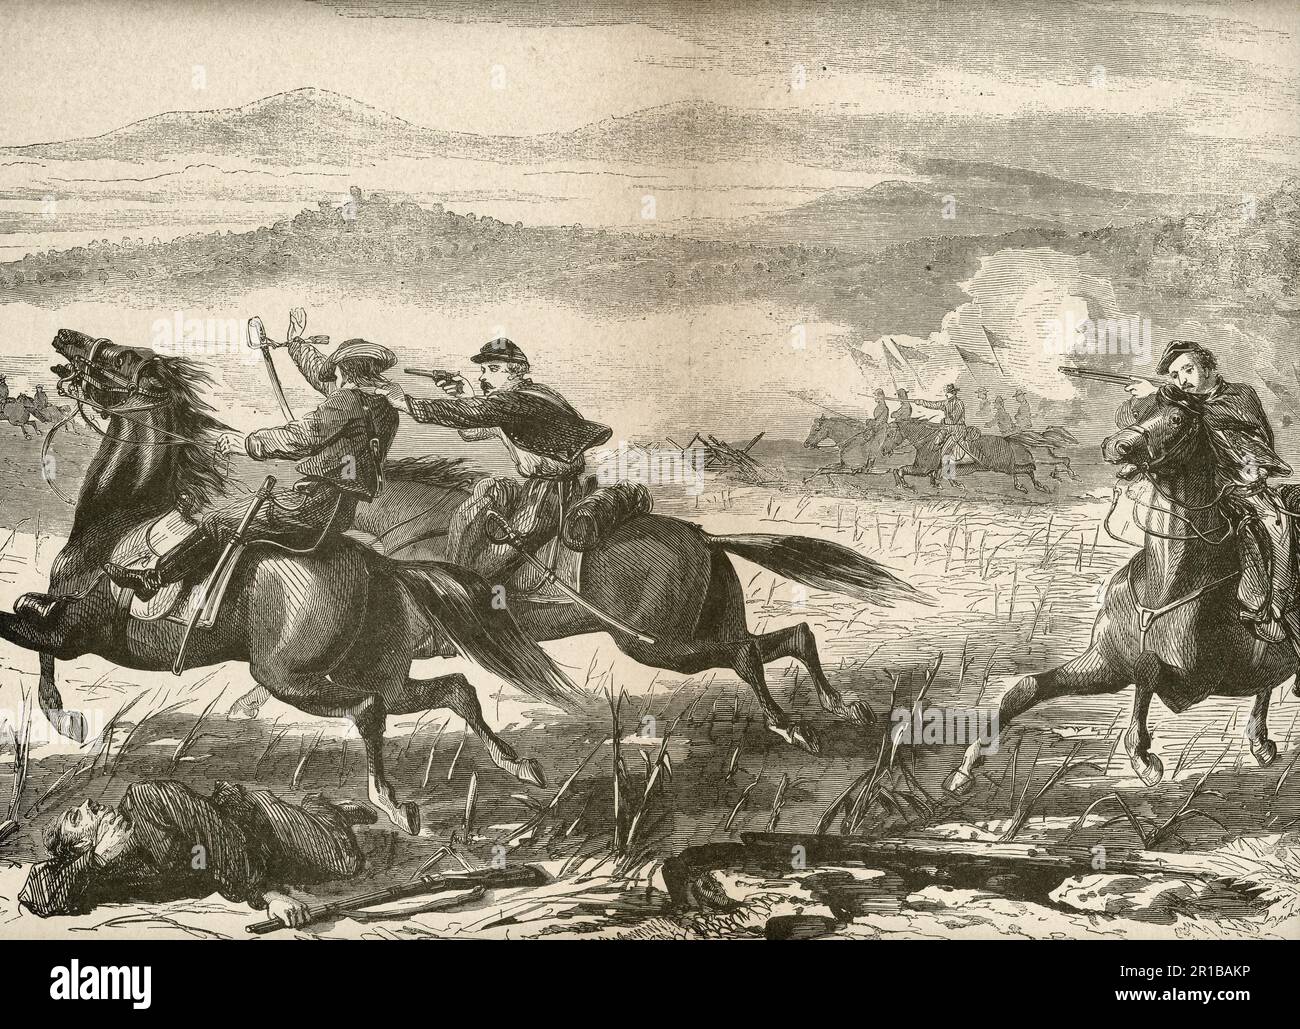 L'avant-garde de l'armée du Potomac qui attaque les rebelles près de Snickersville pendant la guerre civile américaine Banque D'Images